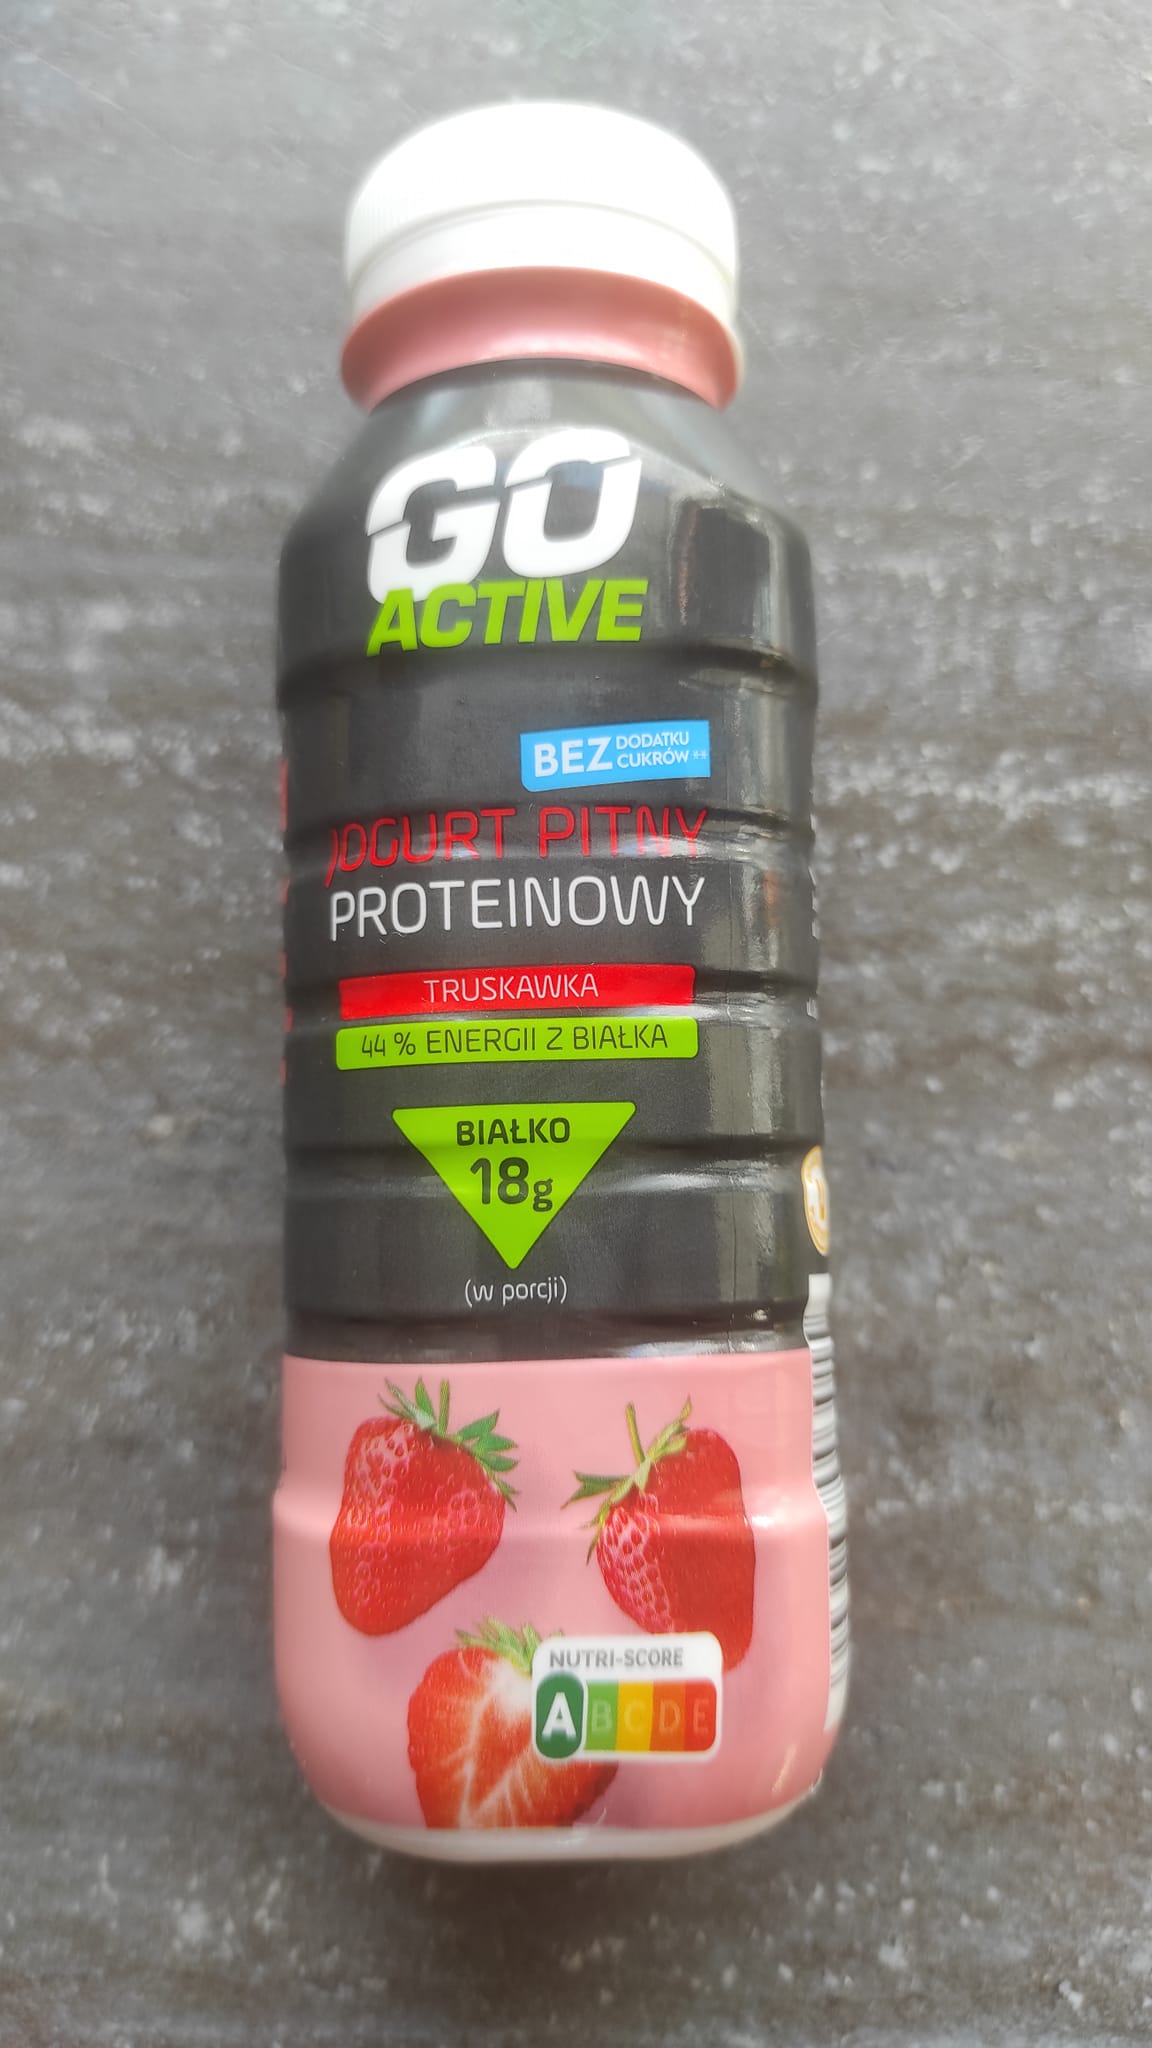 Jogurt pitny proteinowy truskawka – Go Active 5 (1)